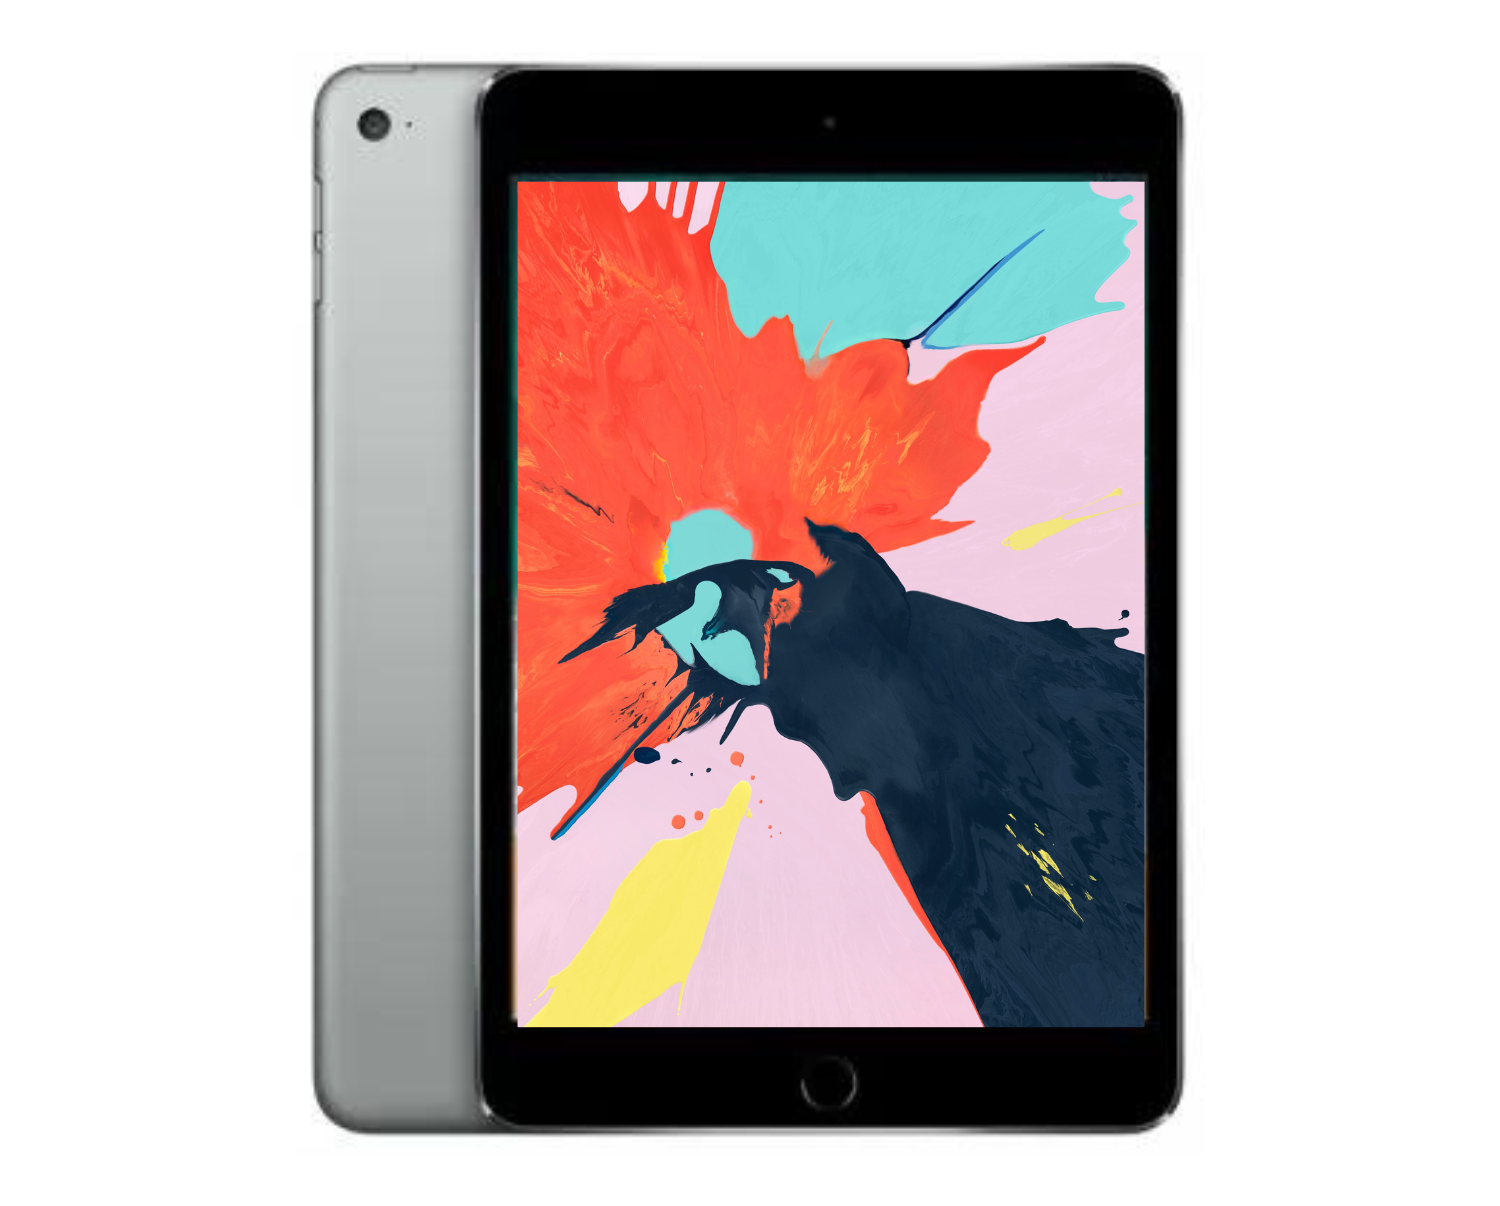 Apple iPad Mini 4 WiFi 16GB Grey A1538 Certified Refurbished